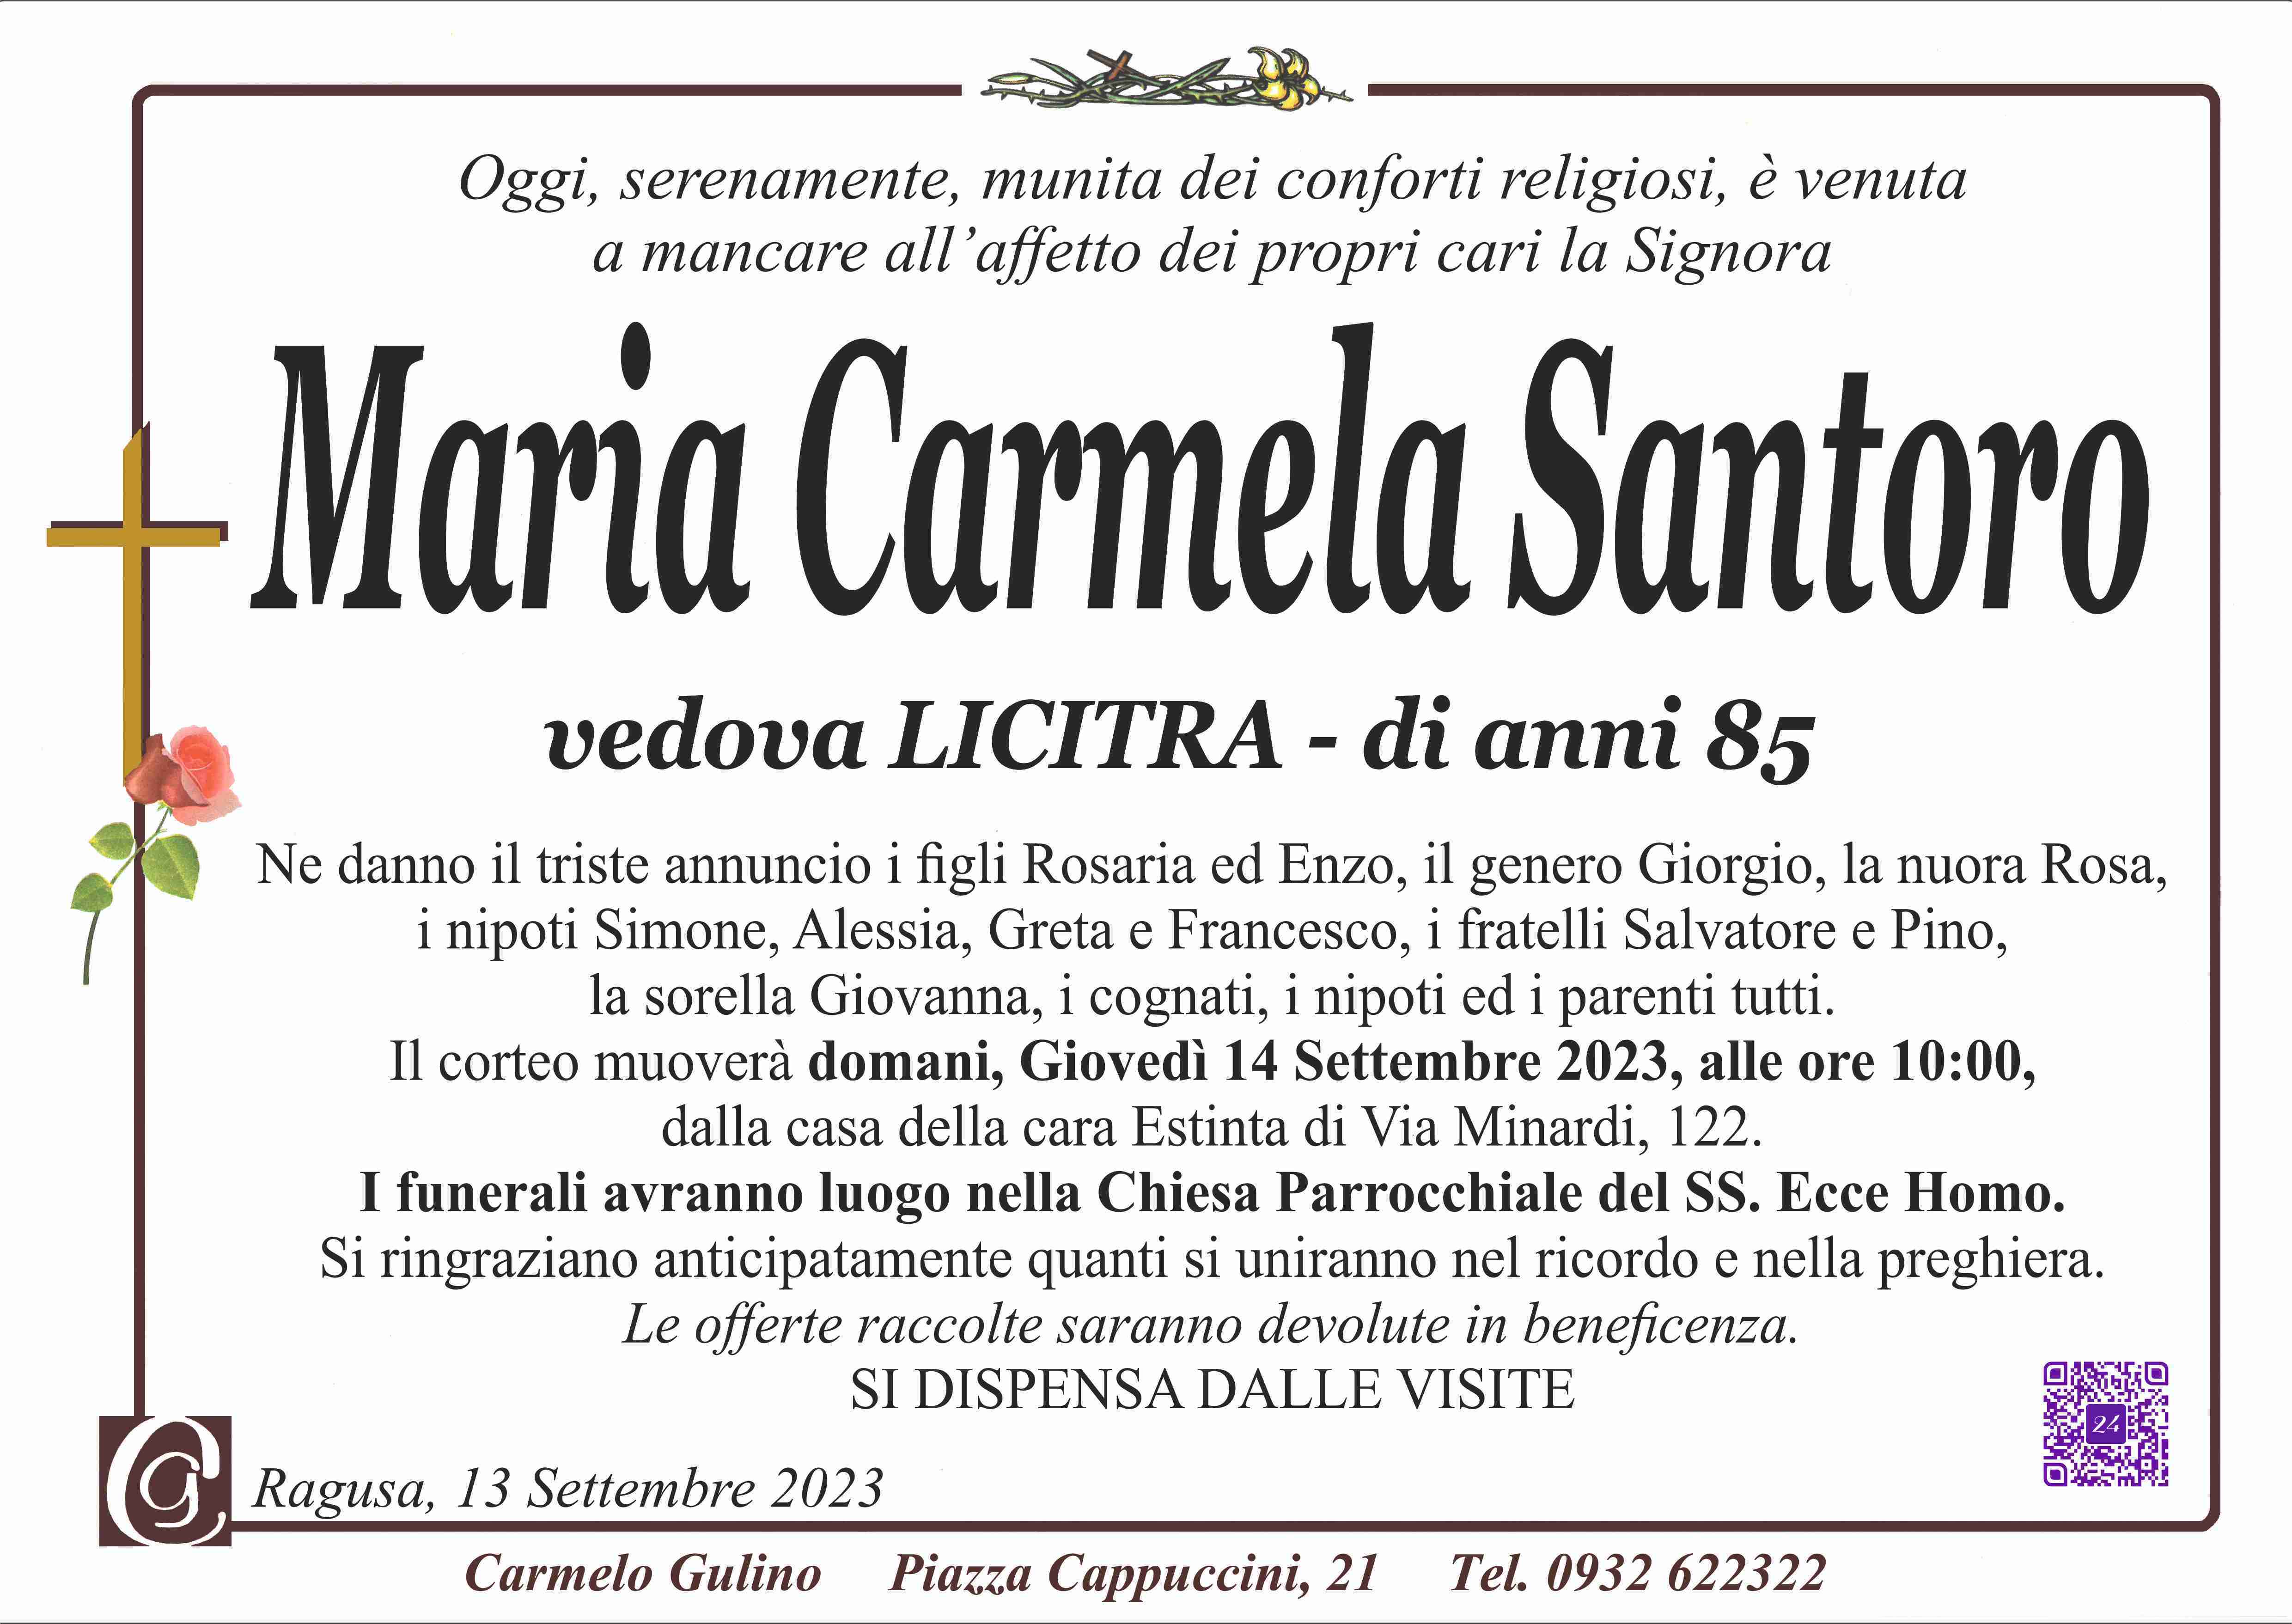 Maria Carmela Santoro